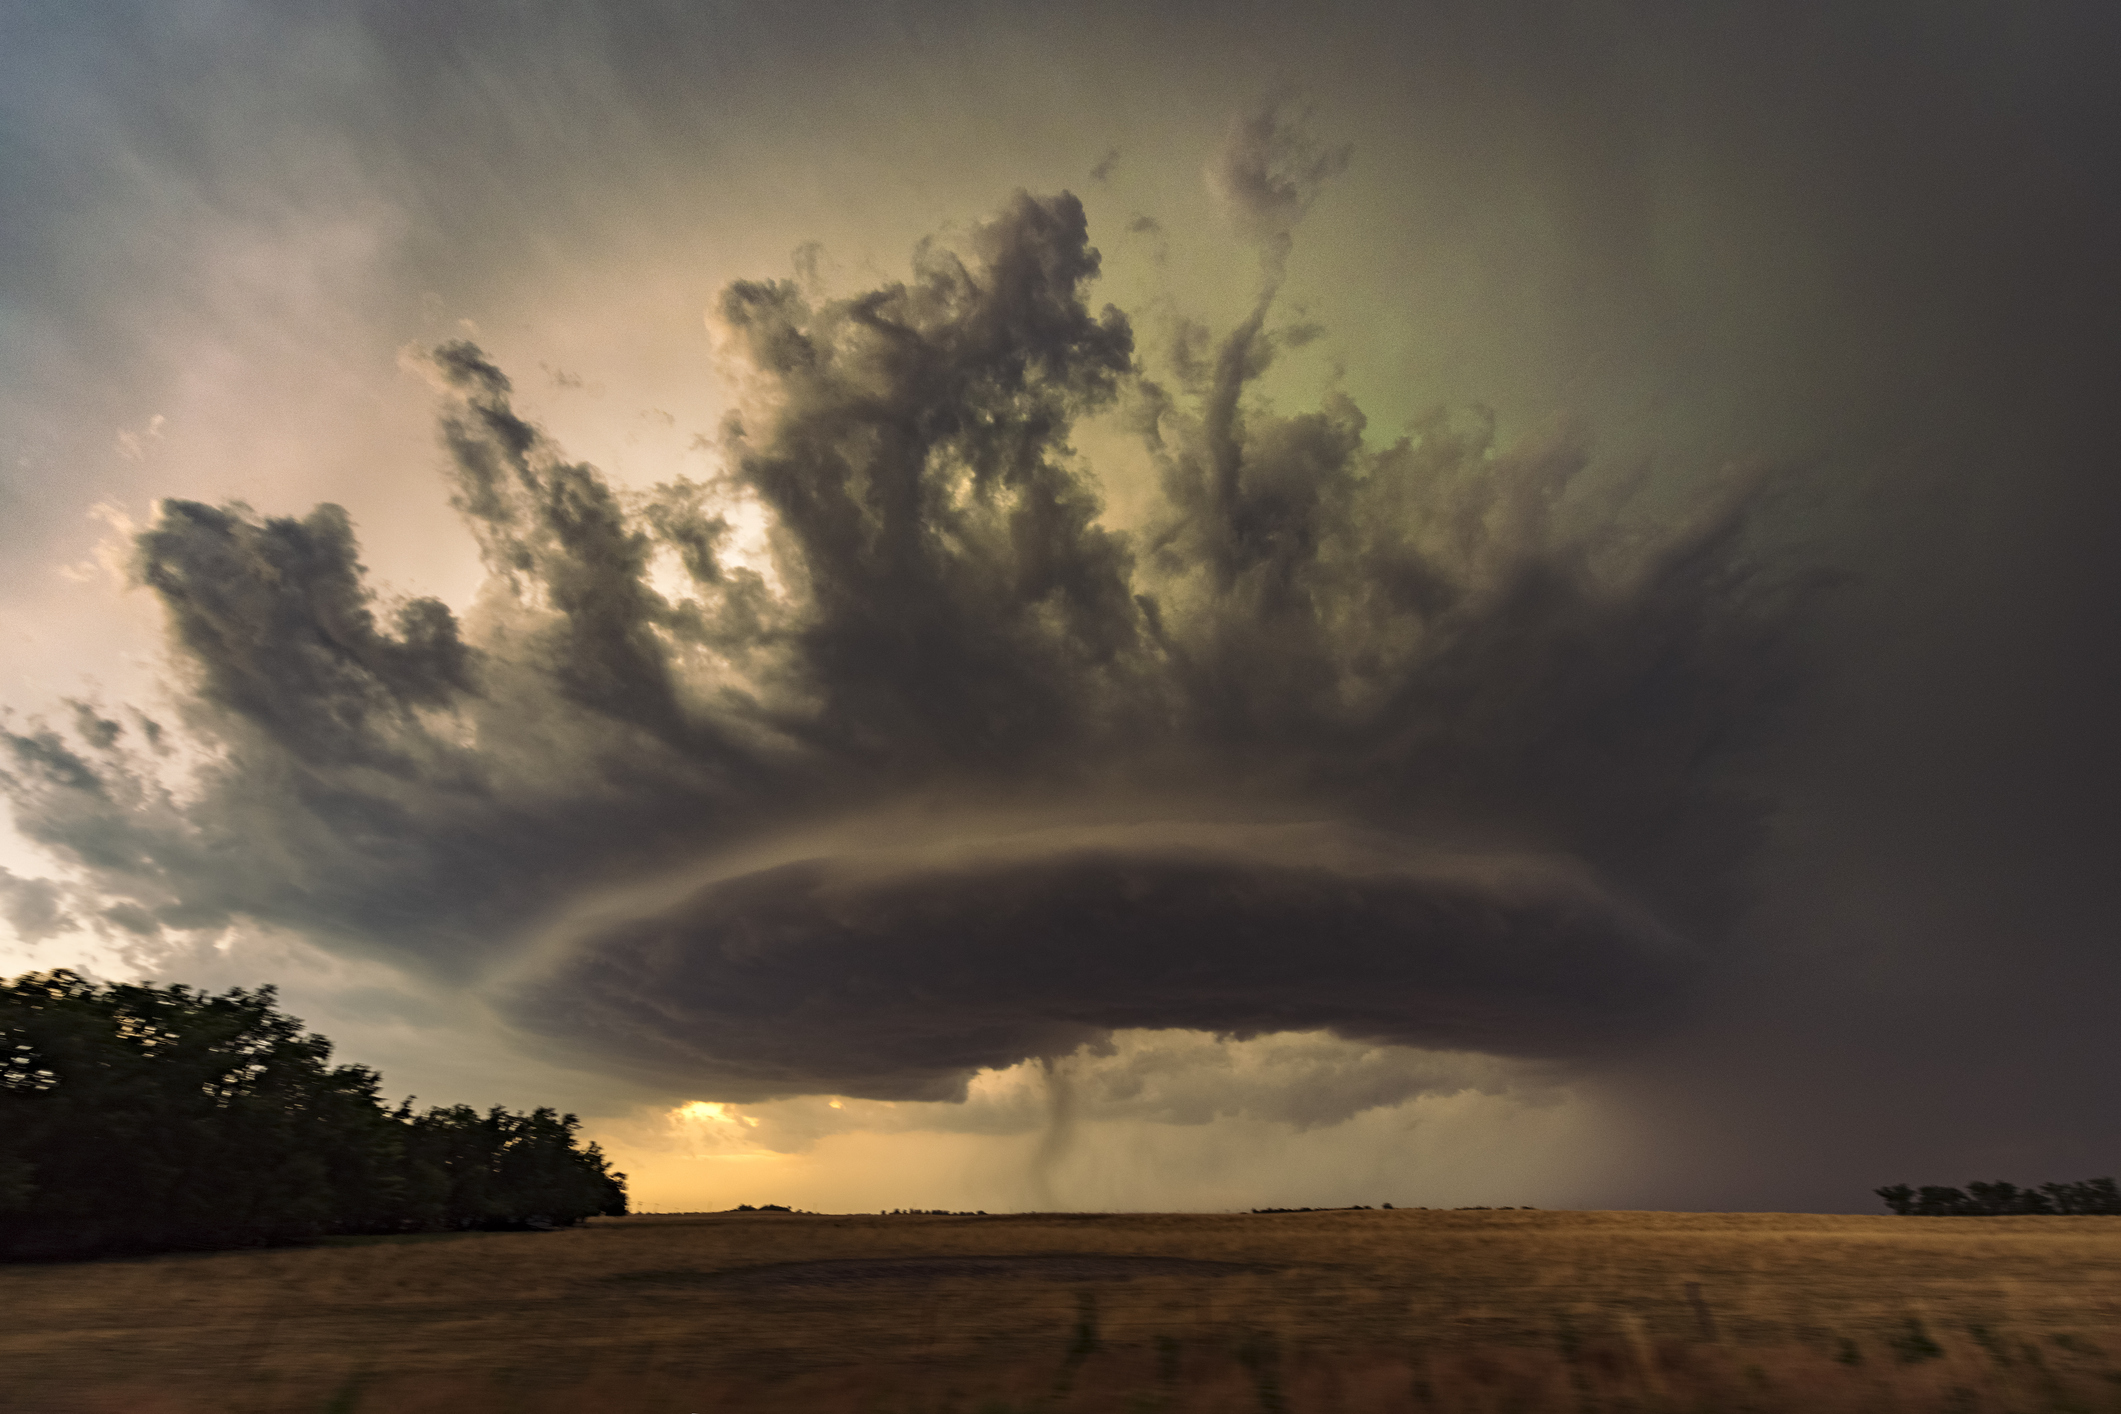 Une puissante tornade au Kansas aux Etats-Unis au sein de la « Tornado Alley », une zone géographique où se produisent fréquemment des tornades. Istock / John Finney